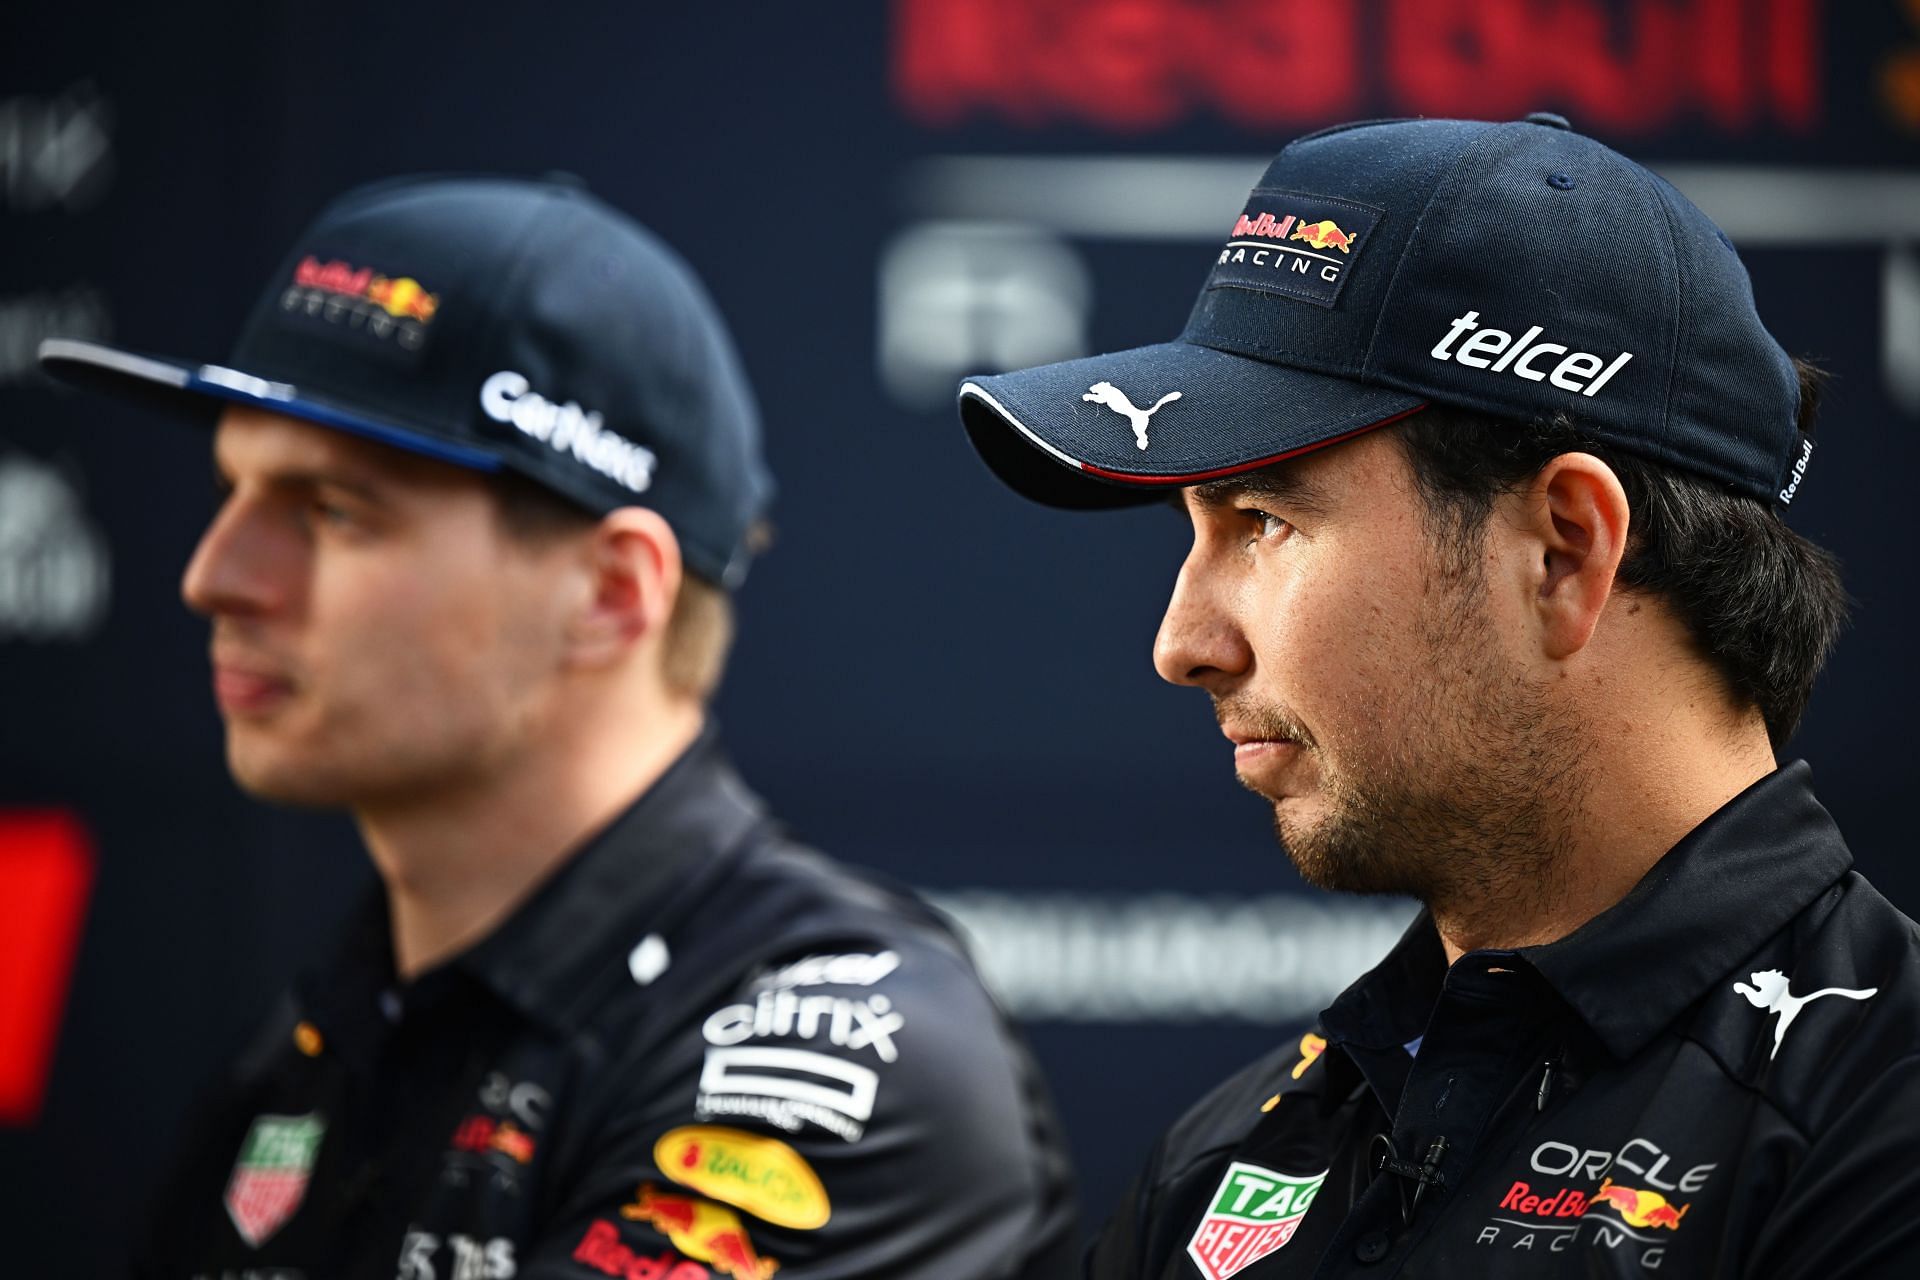 Sergio Perez and Max Verstappen at the F1 Grand Prix of Australia - Previews